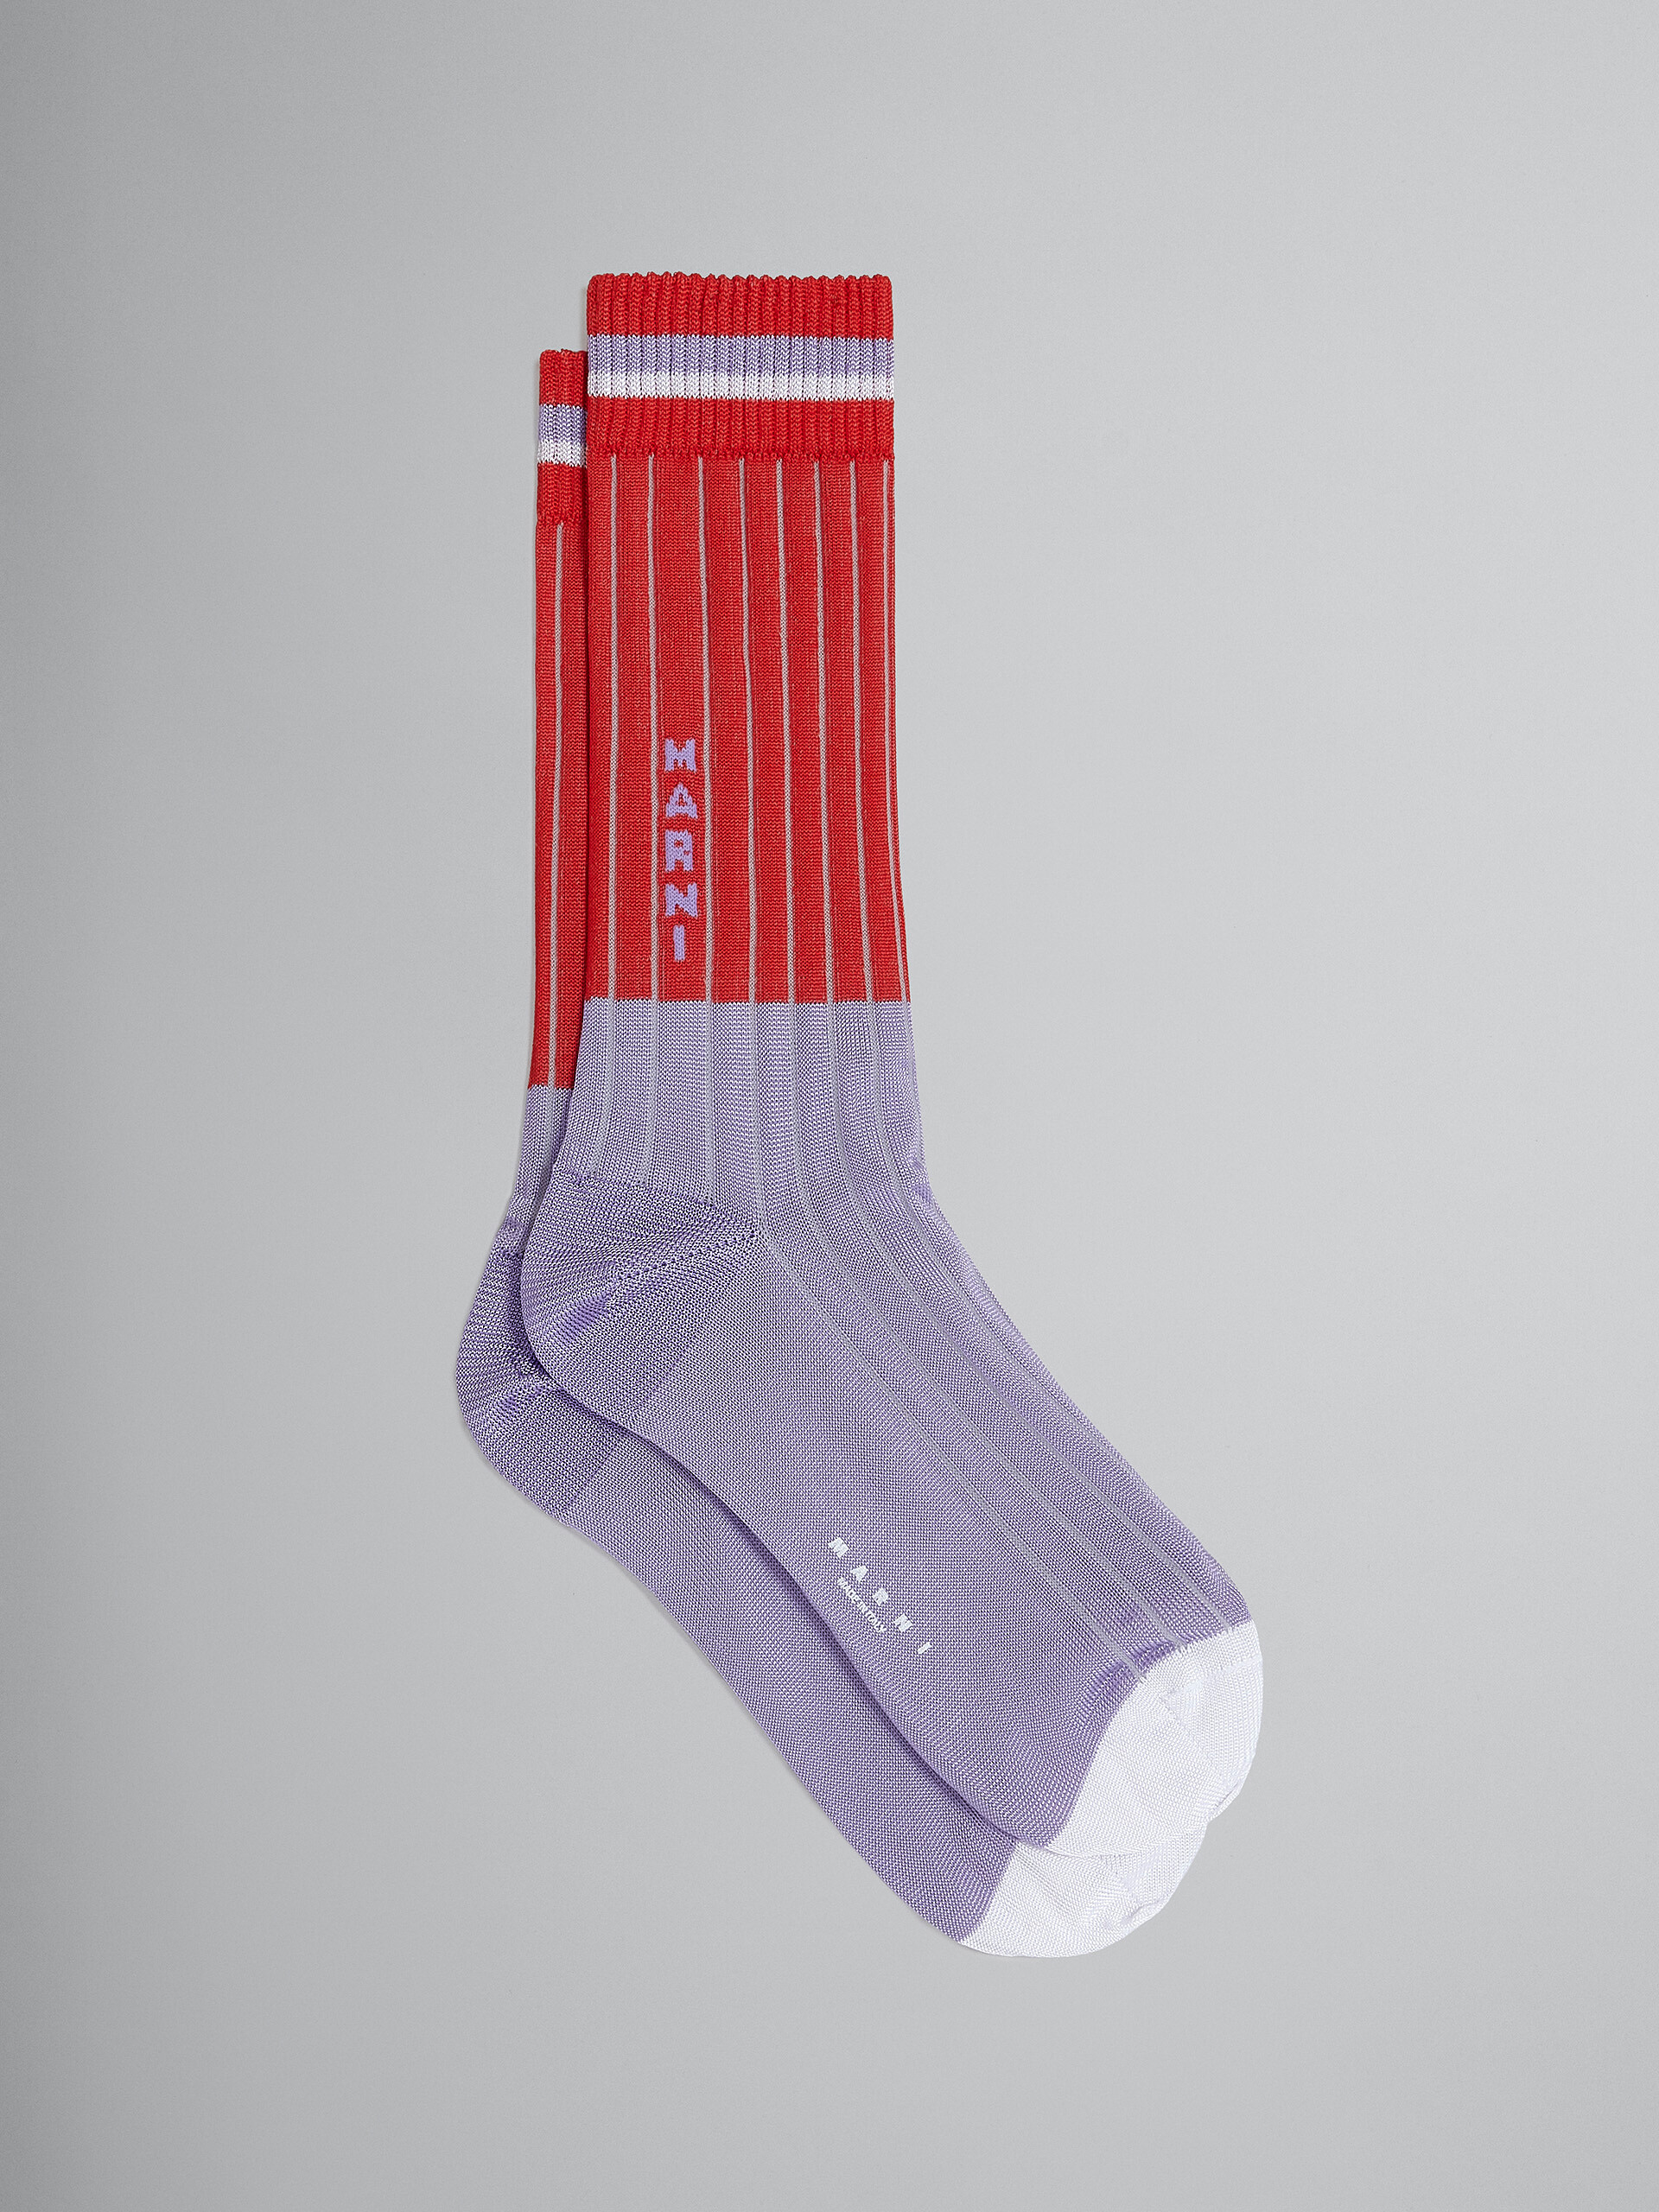 레드 바이 컬러 비스코스 양말 - Socks - Image 1